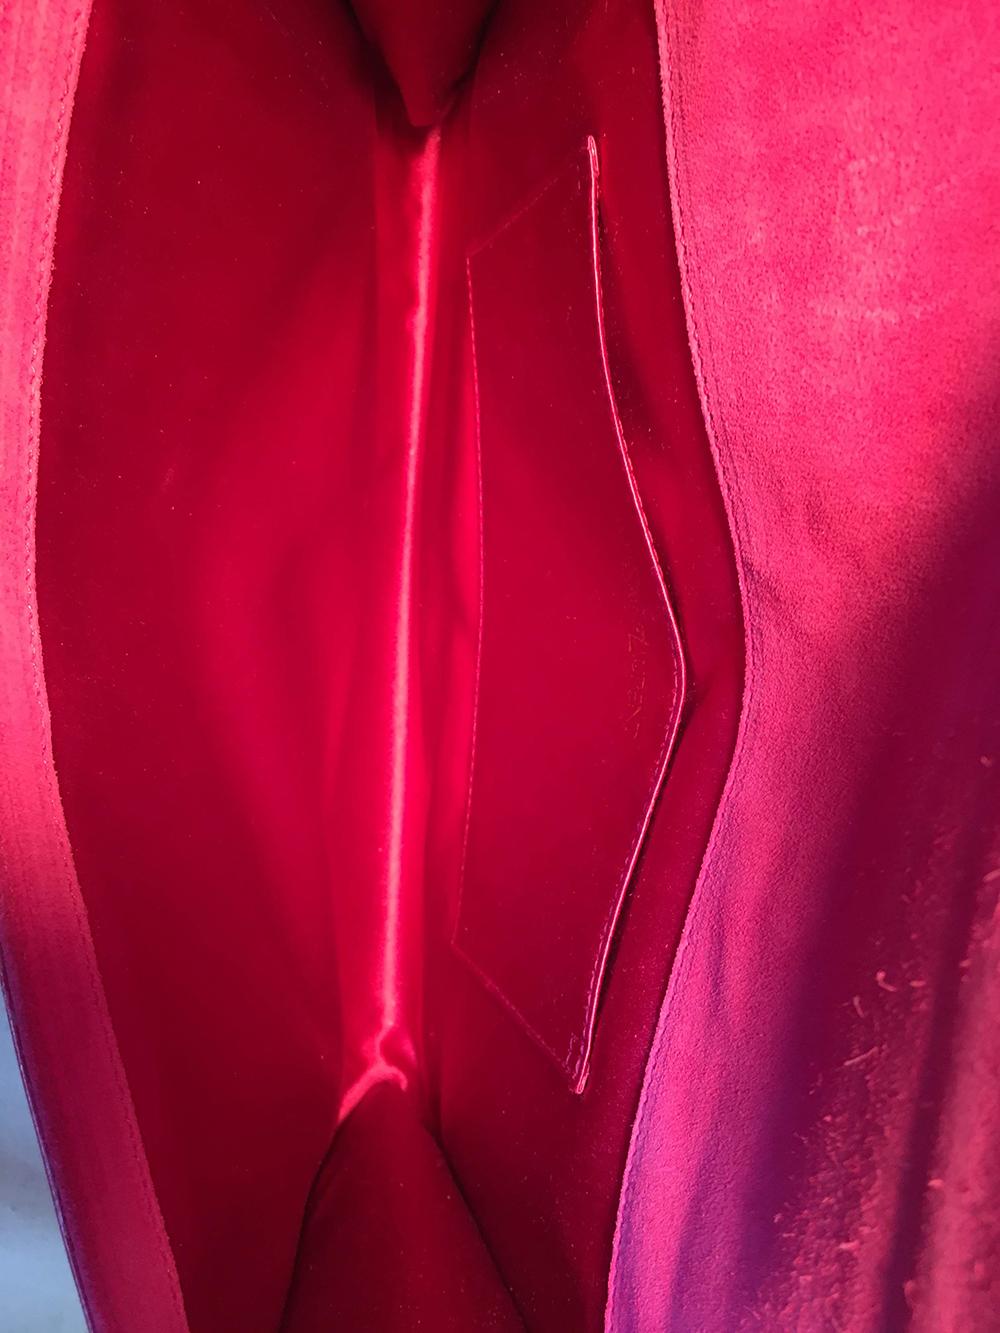 YSL Yves Saint Laurent Belle de Jour Hot Pink Patent Leather Clutch 2